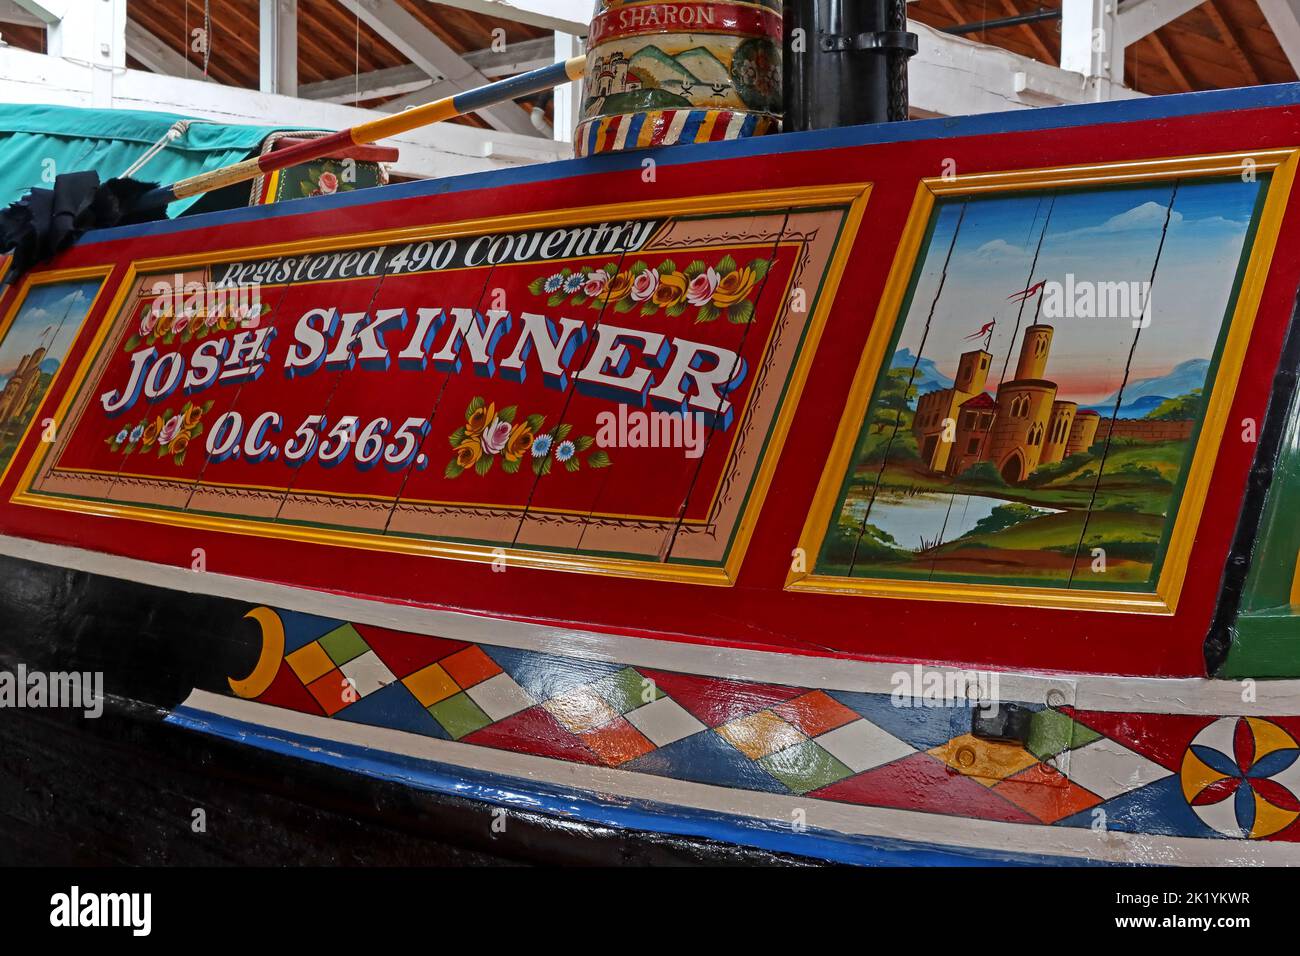 Décoration de barge, Josh Skinner, OC 5565, enregistré 490 Coventry, Péniche décorée de façon traditionnelle, image du château Banque D'Images